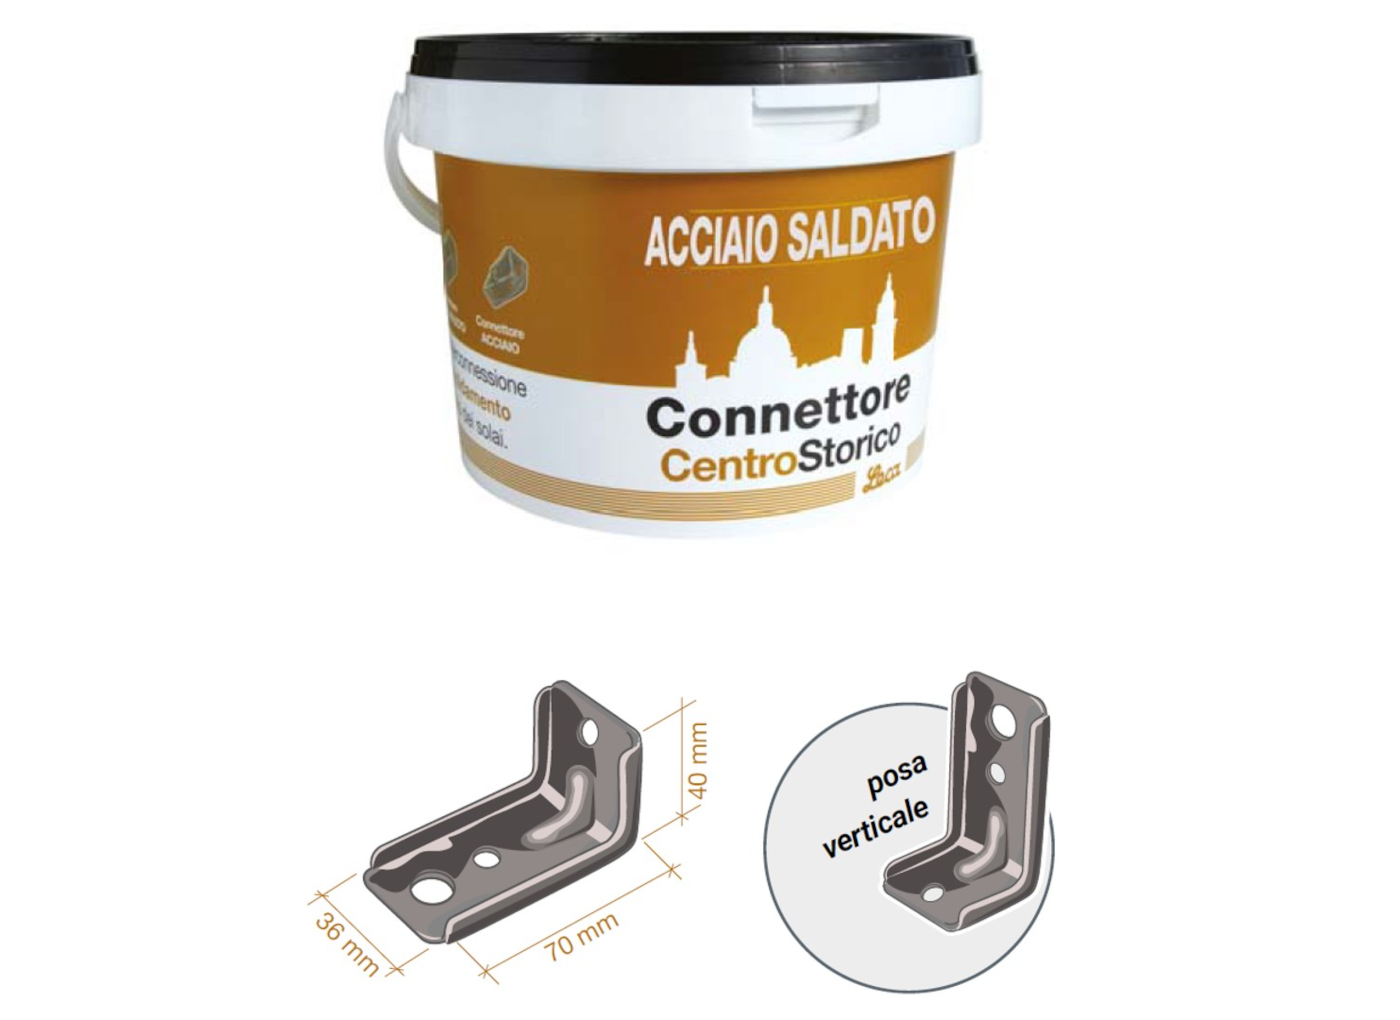 connettore-acciaio-saldato-leca-centrostorico-confezione